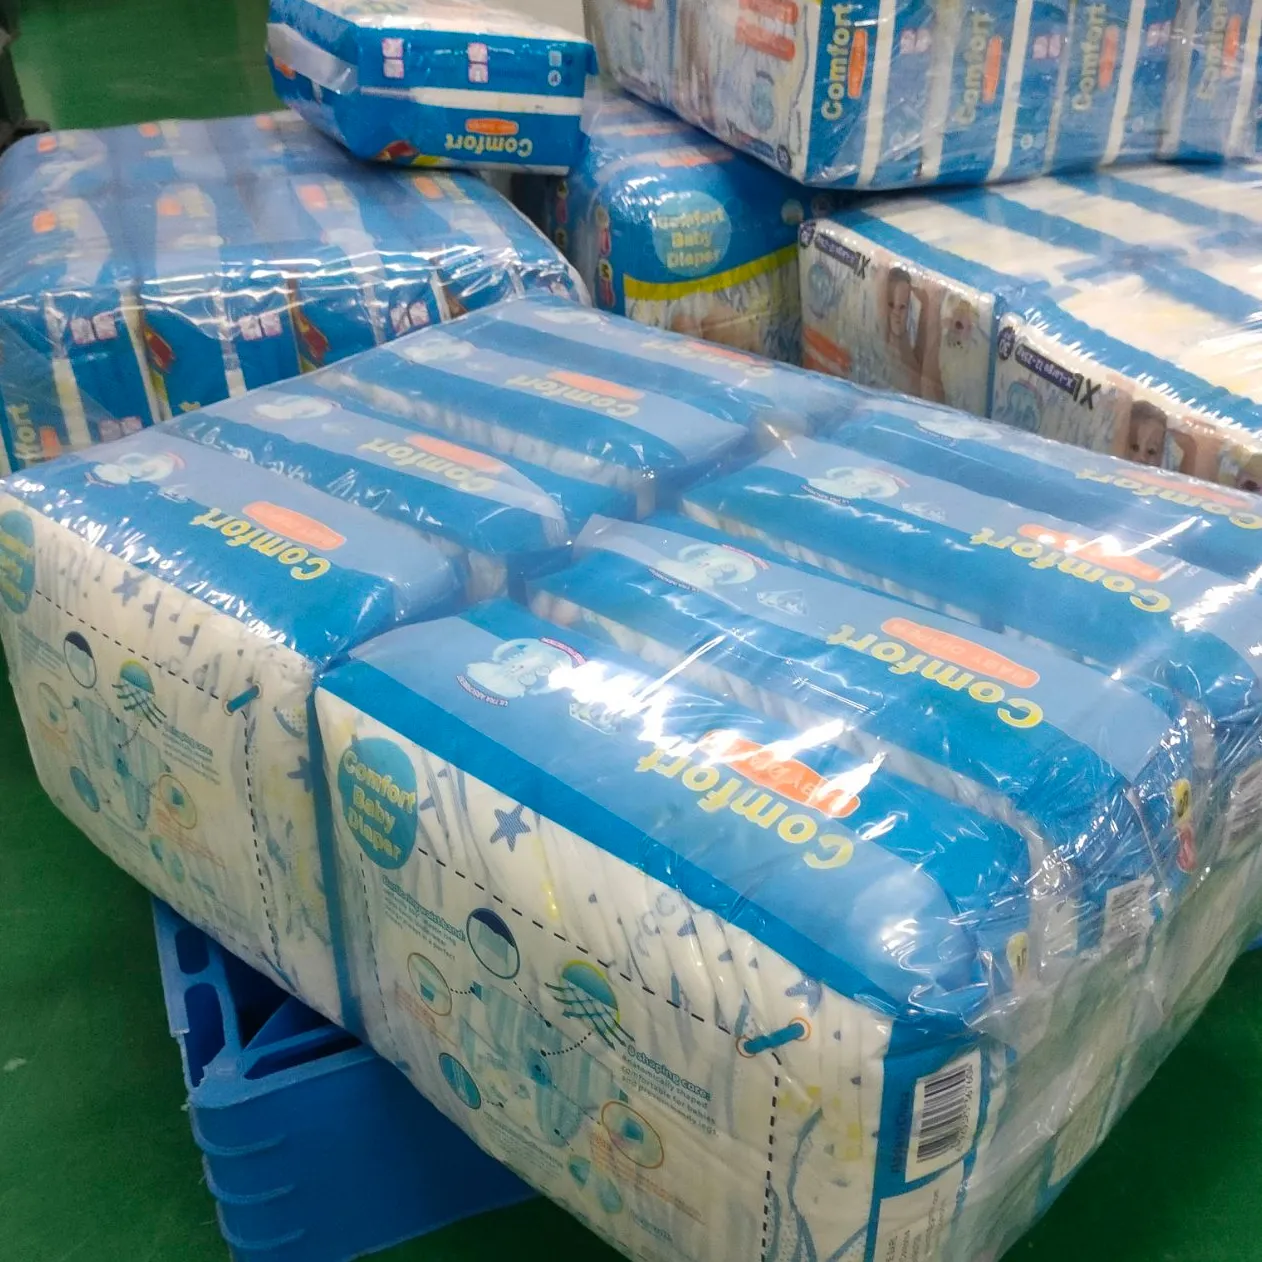 Venta caliente transpirable muestras gratis pañales desechables para bebés fábrica pañales para bebés precio económico más barato mimos